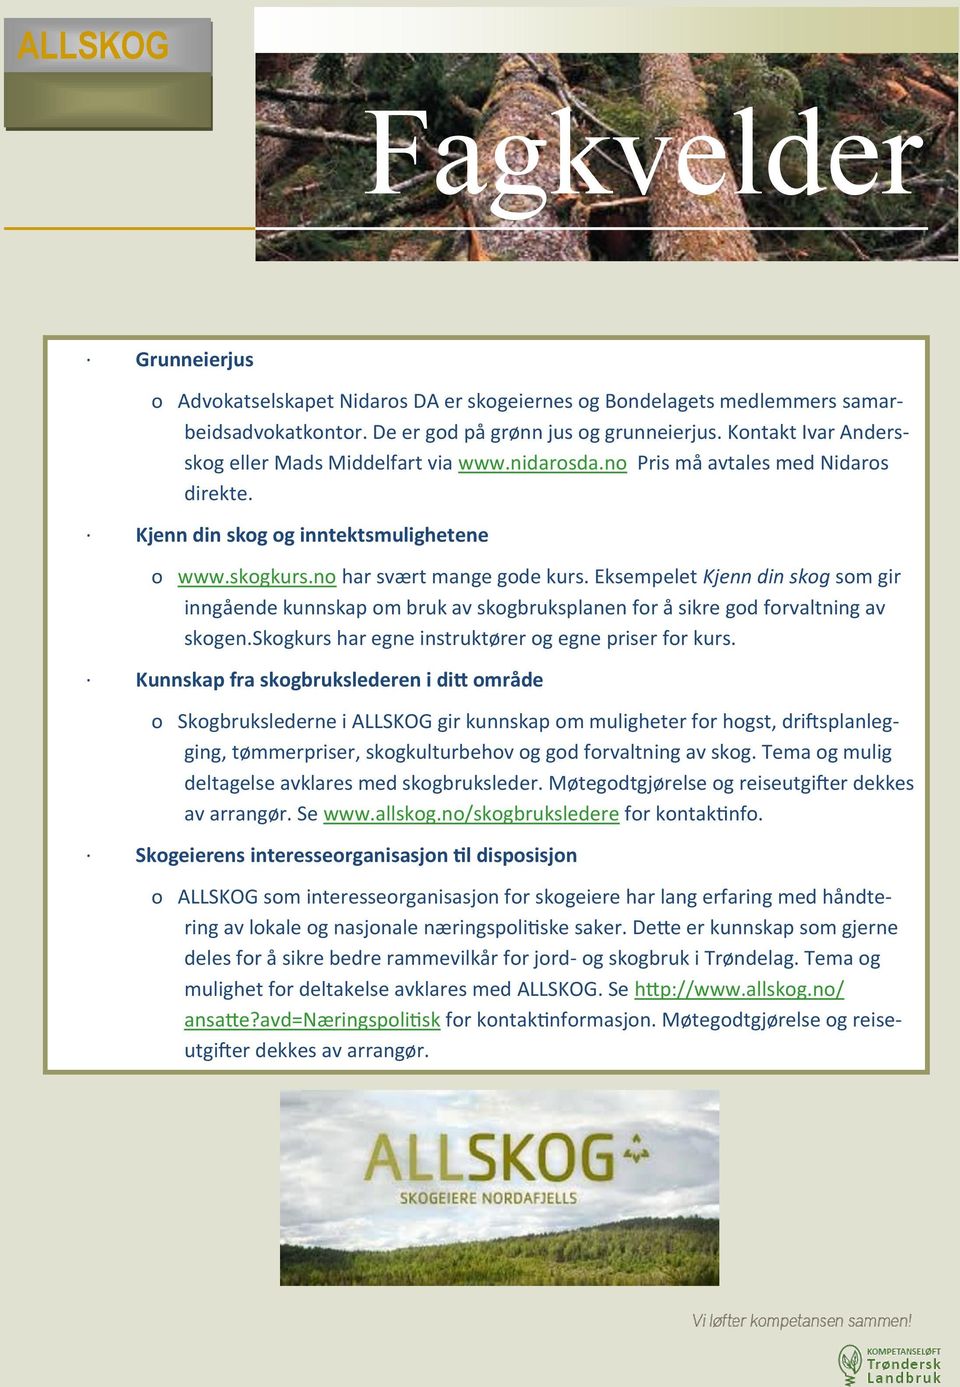 Eksempelet Kjenn din skog som gir inngående kunnskap om bruk av skogbruksplanen for å sikre god forvaltning av skogen.skogkurs har egne instruktører og egne priser for kurs.